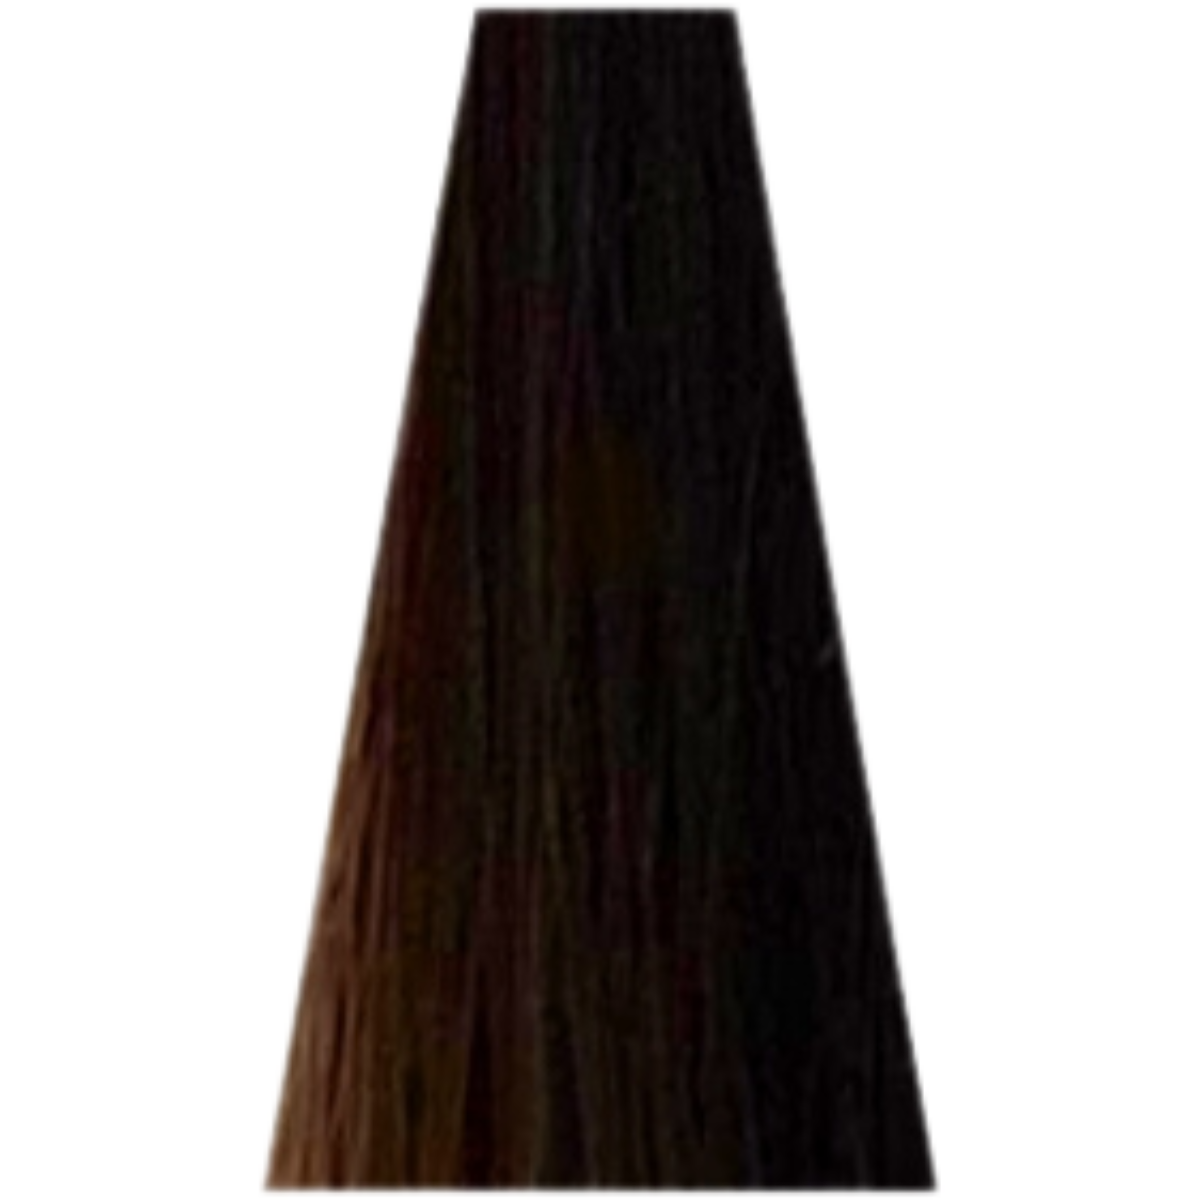 צבע שיער 6.13 COOL BROWNS דיה רישס לוריאל DIA RICHESSE LOREAL צבע שטיפה לשיער